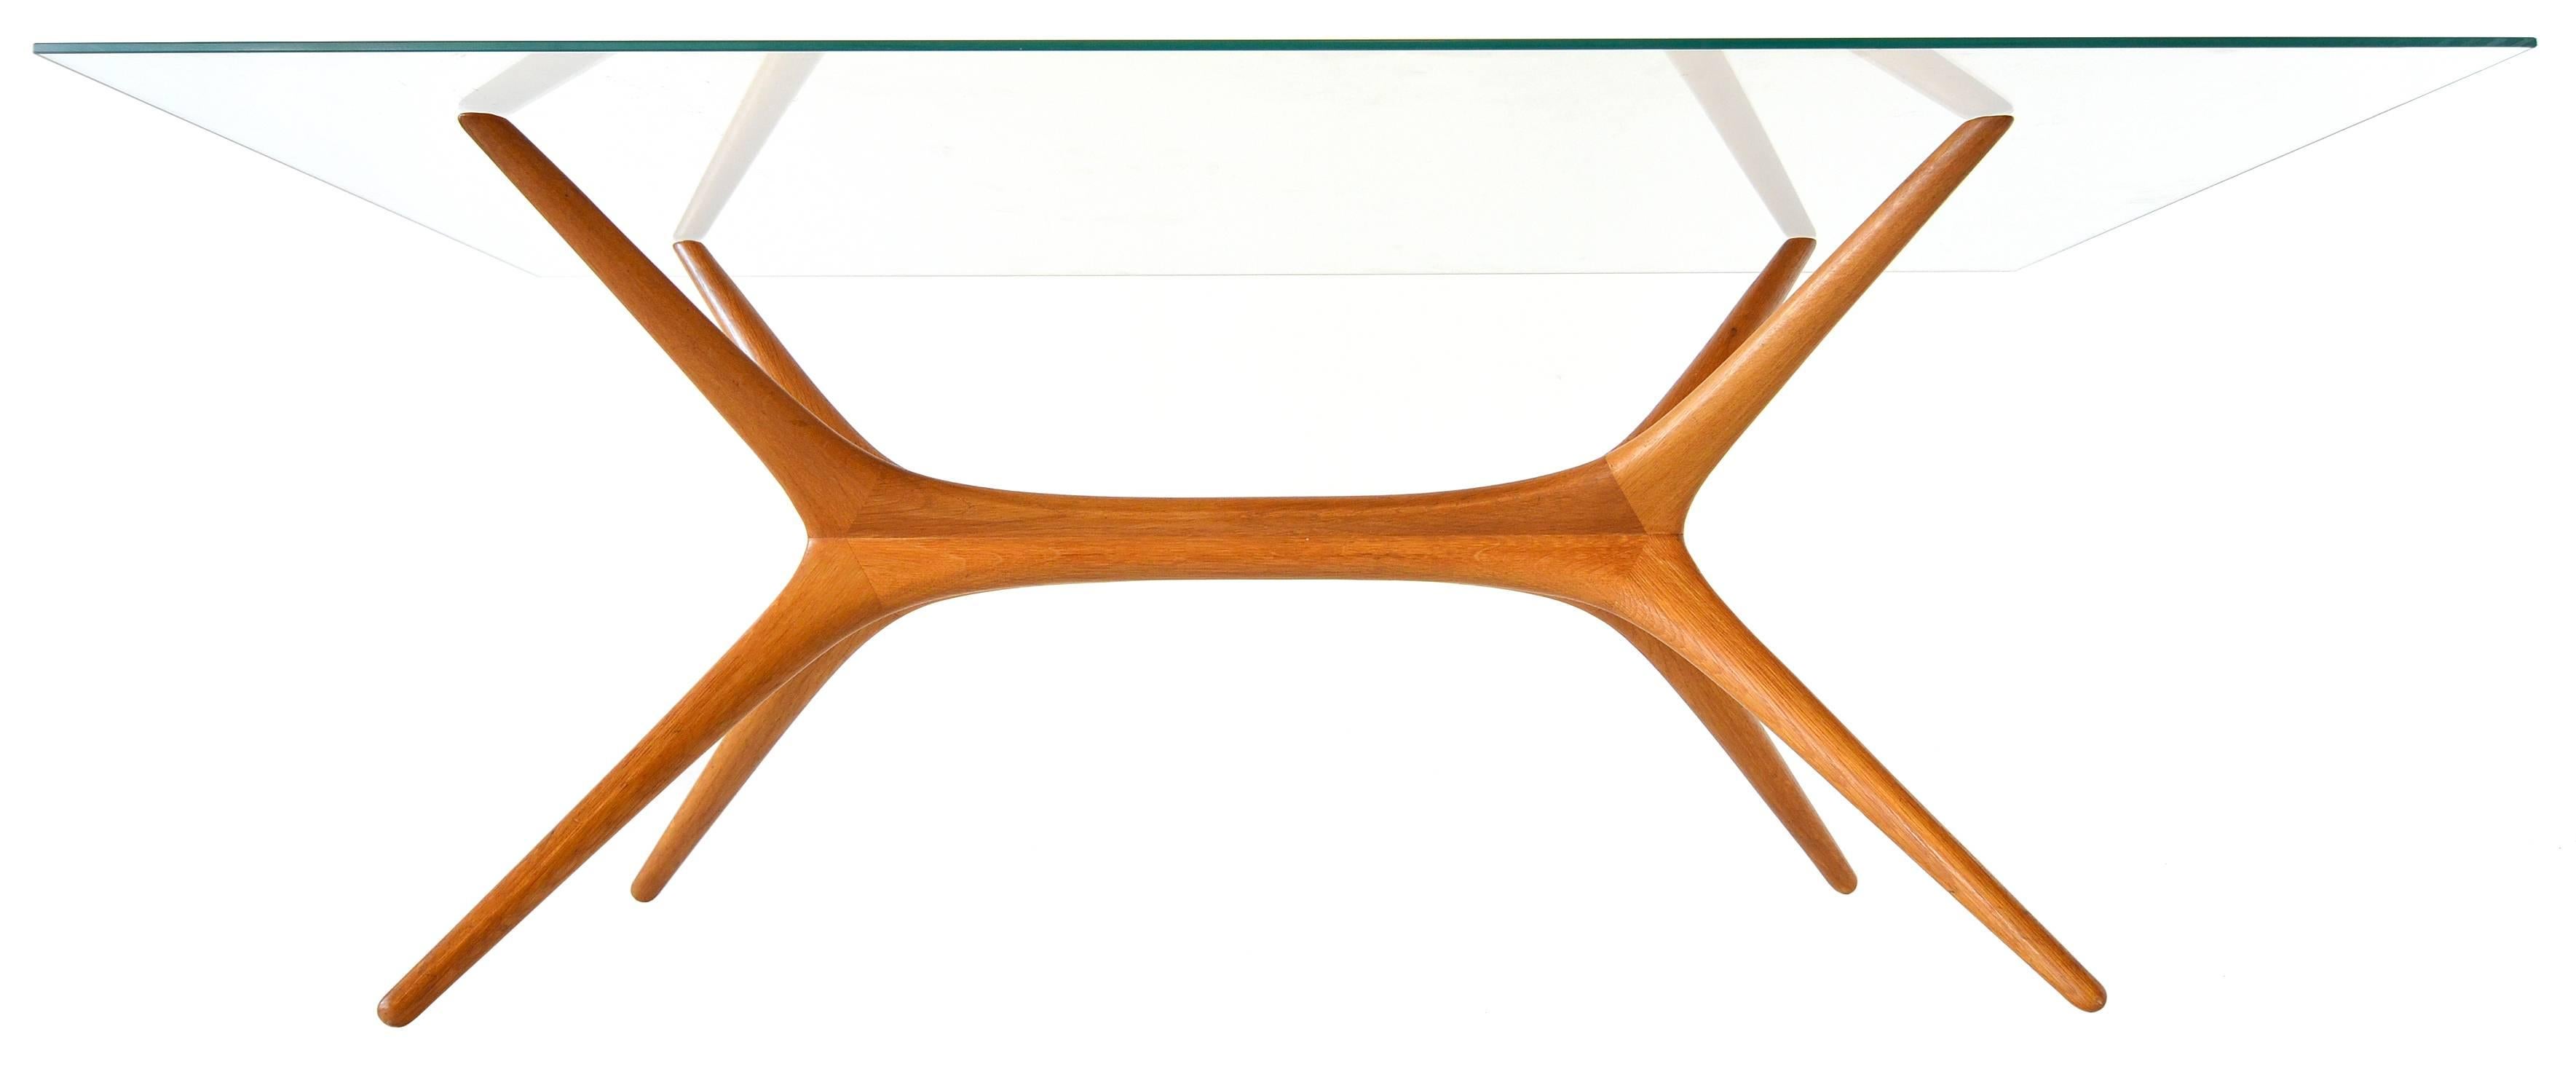 Entworfen für Asko, Finnland, 1958.

Diese Tische sind sehr begehrt und gelten als Tapio Wirkkalas wichtigste Produktionsmöbel. 

Gefertigt aus handgeschnitztem massivem Ulmenholz in vier Teilen. Jeder Quadrant ist genau die gleiche Form, die